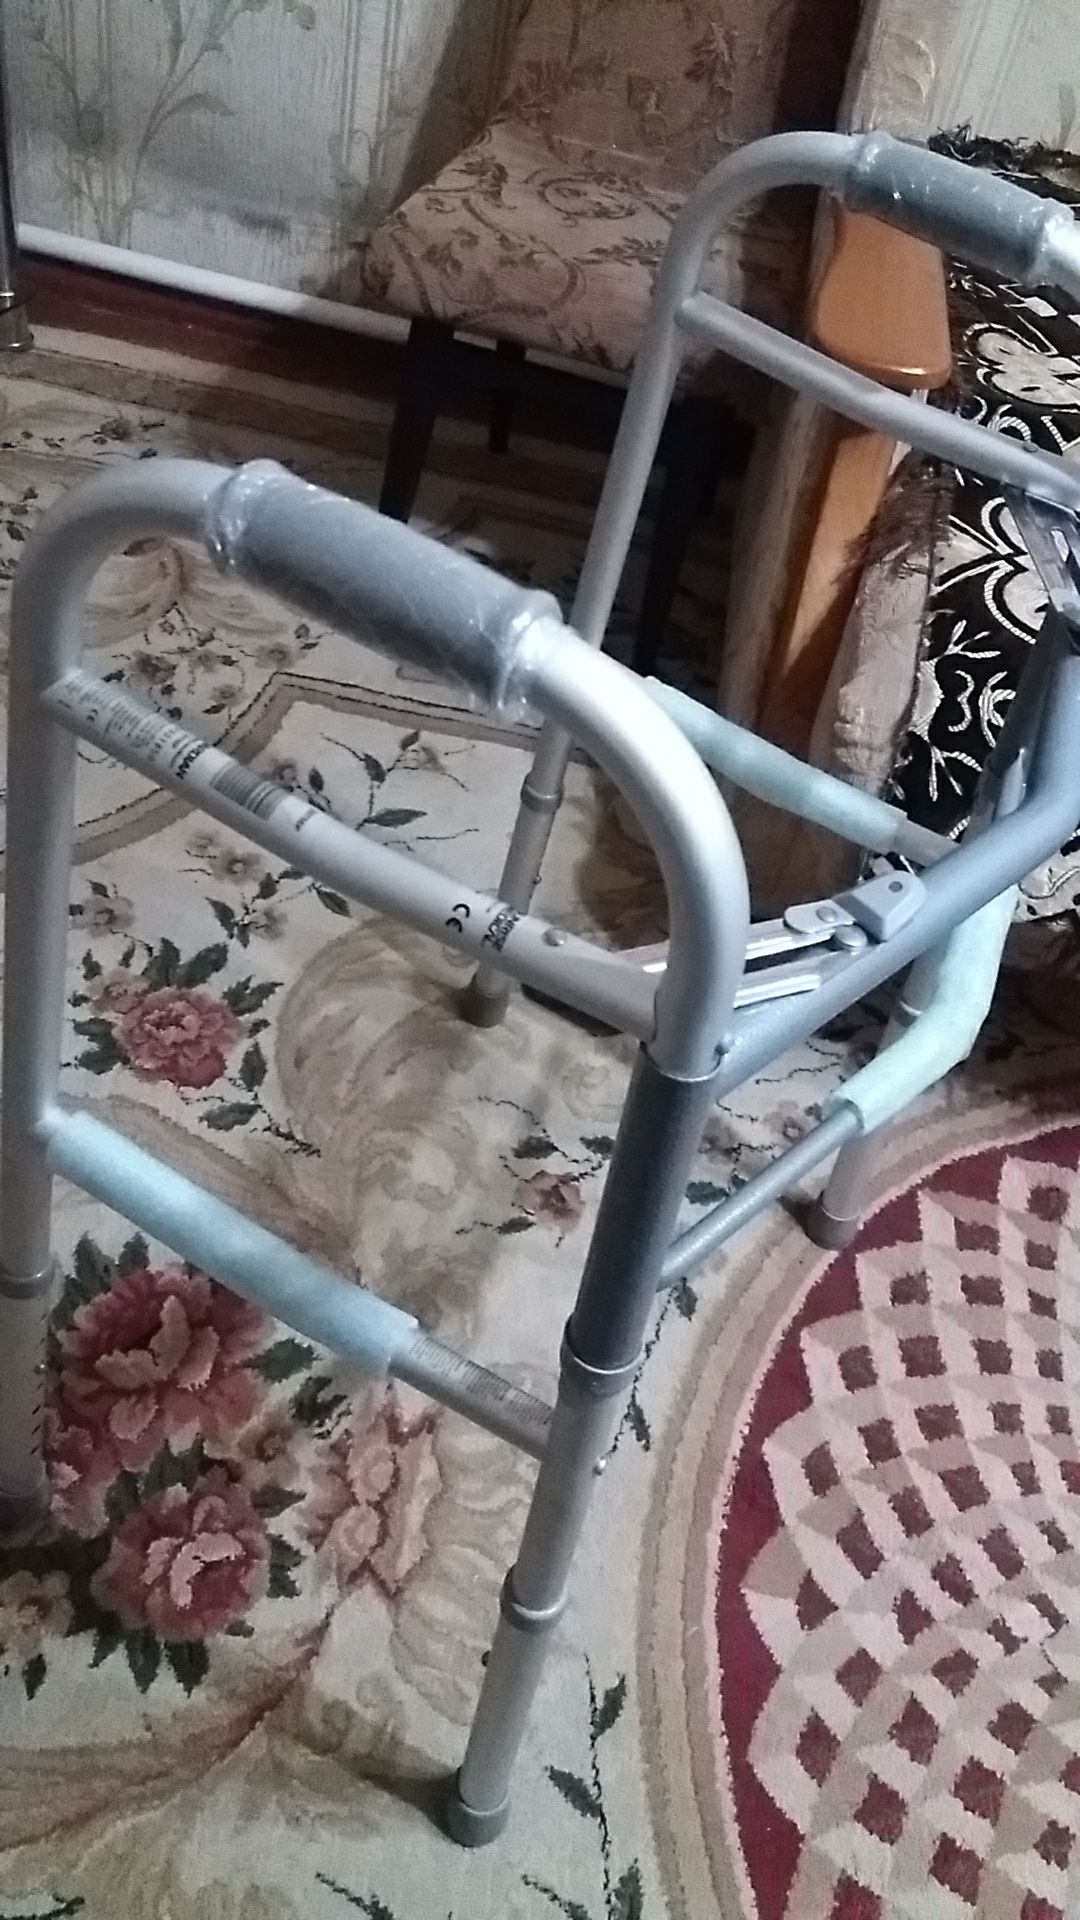 ходунки инвалидные для взрослых и пожилых.новые